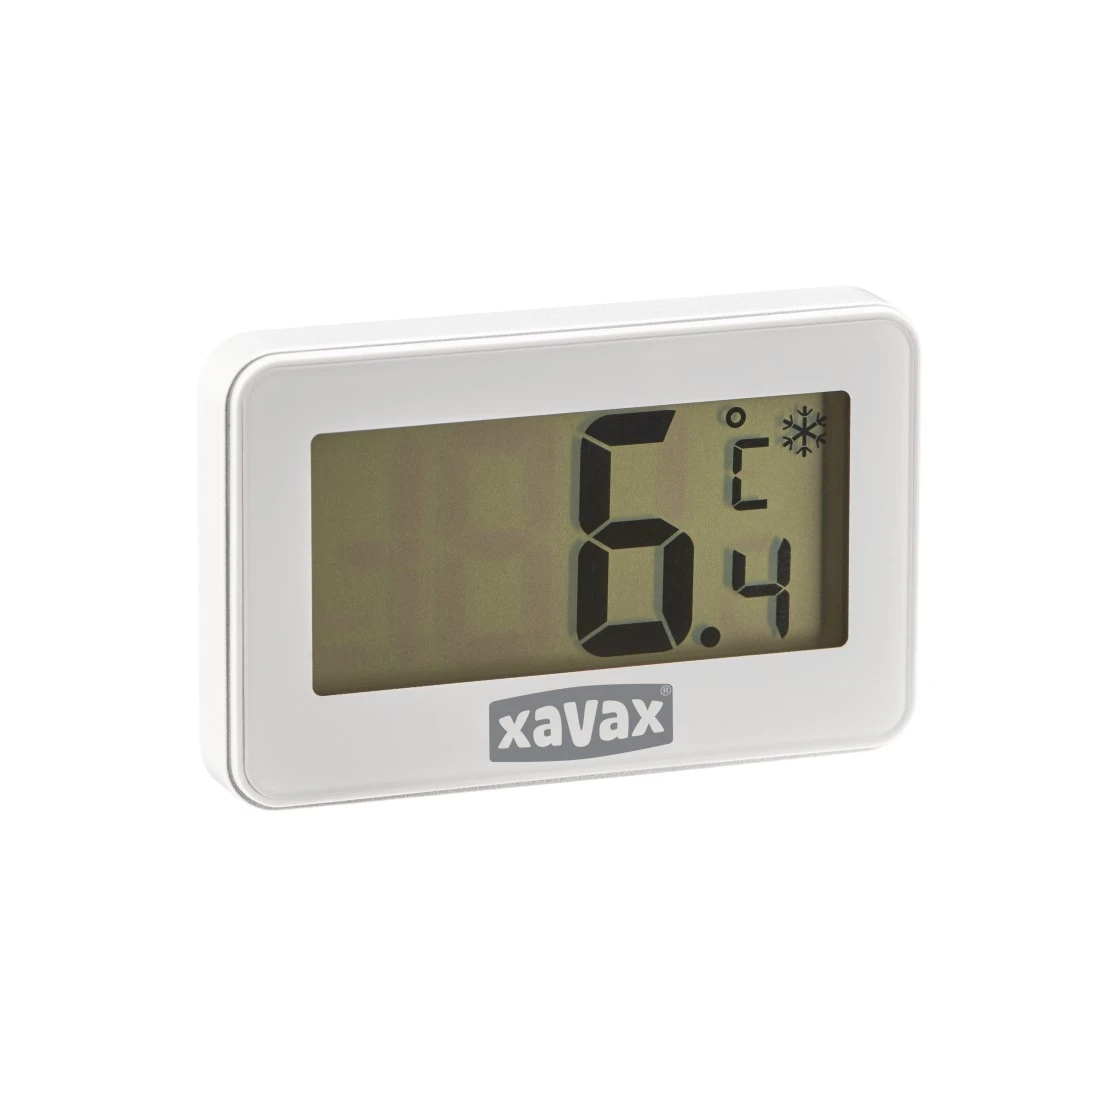 abx3 Druckfähige Abbildung 3 - Xavax, Digitales Thermometer für Kühlschrank, Gefrierschrank und Kühltruhe, Weiß